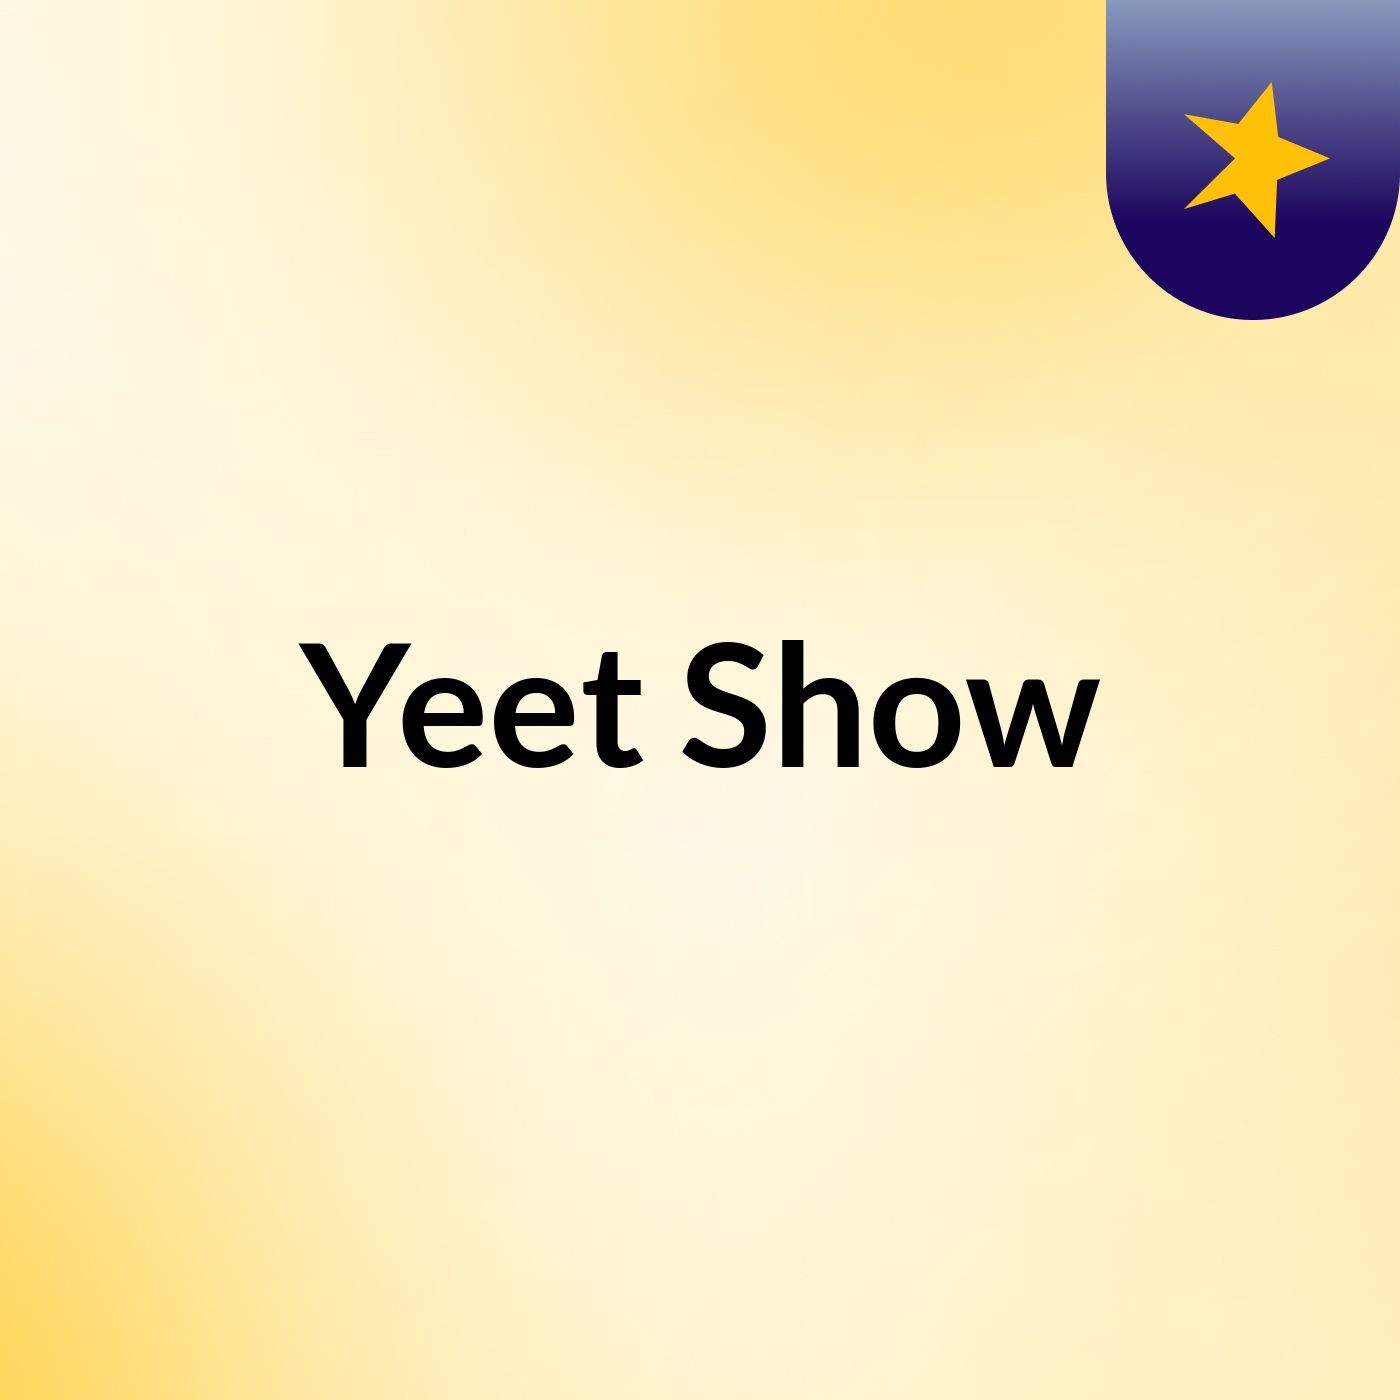 Yeet Show